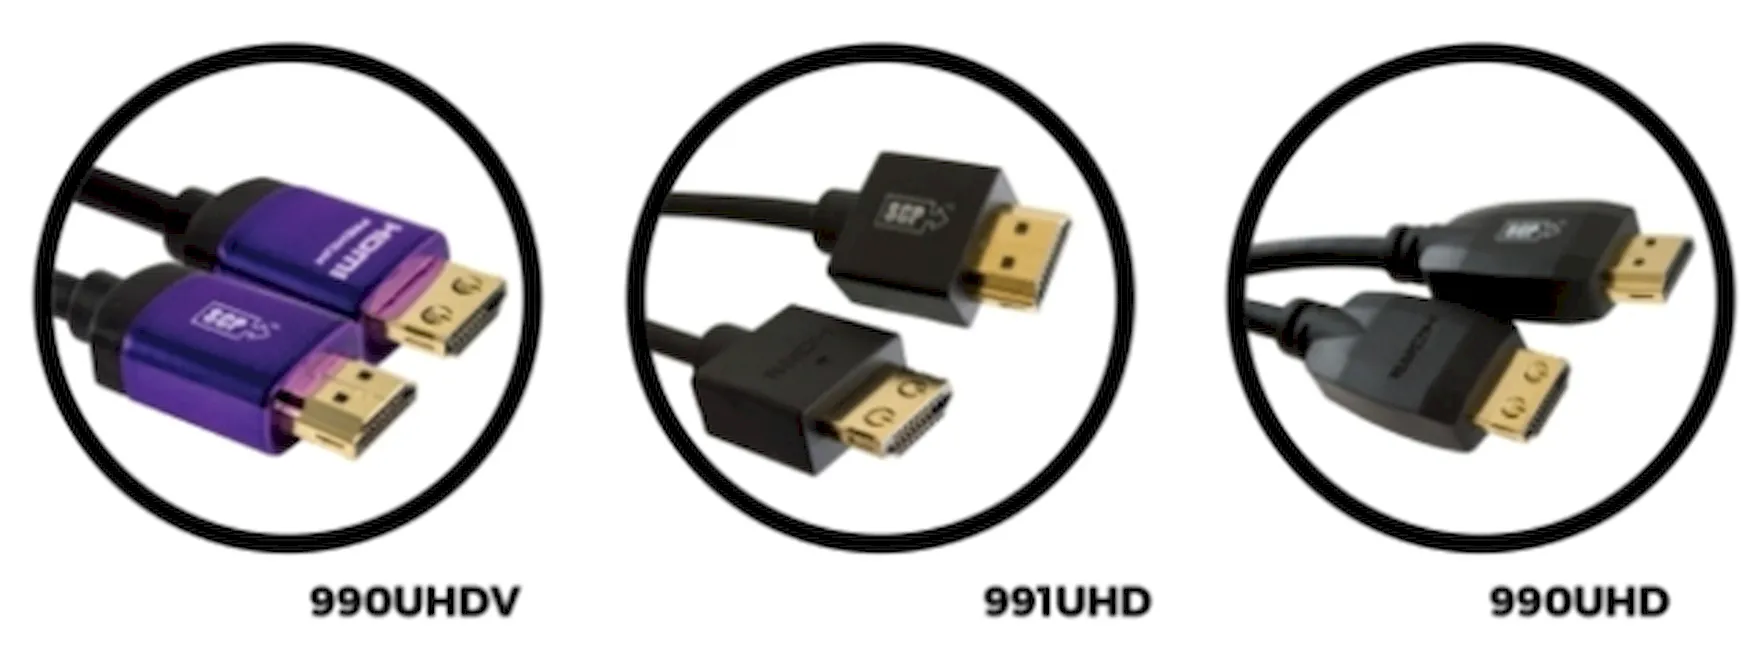 Форматы современных высокоскоростных кабелей HDMI